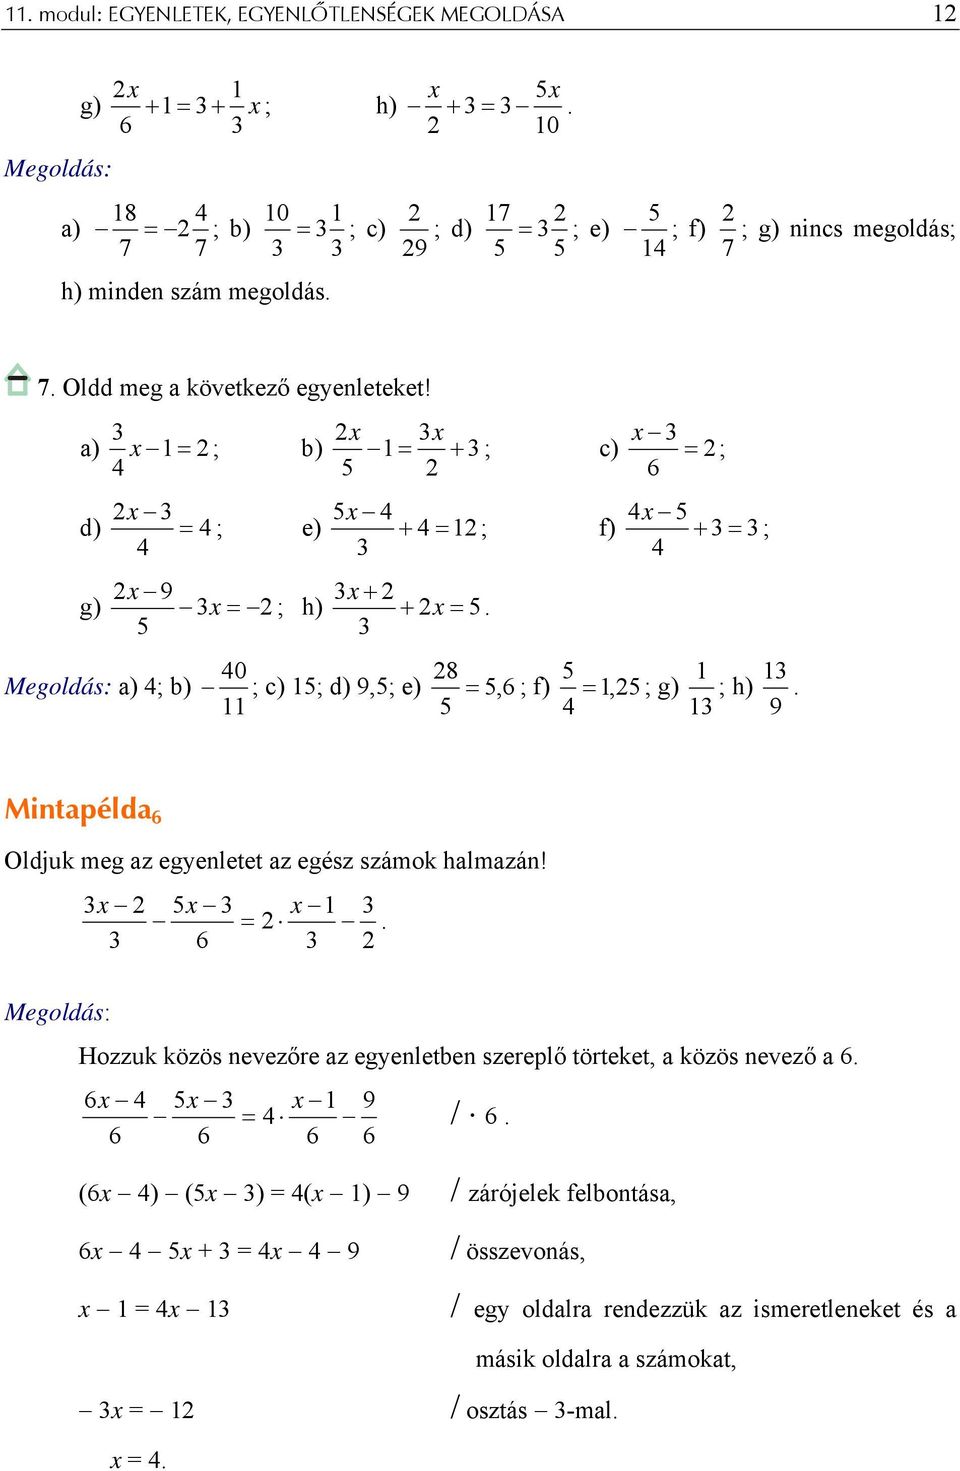 x x a) x 1 = 2 ; b) 1 = + ; c) = 2; 4 2 6 x 4 4x d) = 4 ; e) + 4 = 12 ; f) + = ; 4 4 9 x + 2 g) x = 2 ; h) + = a) 4; b) 40 ; c) 1; d) 9,; e) 28, 6 1 1 = ; f) = 1, 2 ; g) ; h) 11 4 1 9 Mintapélda 6